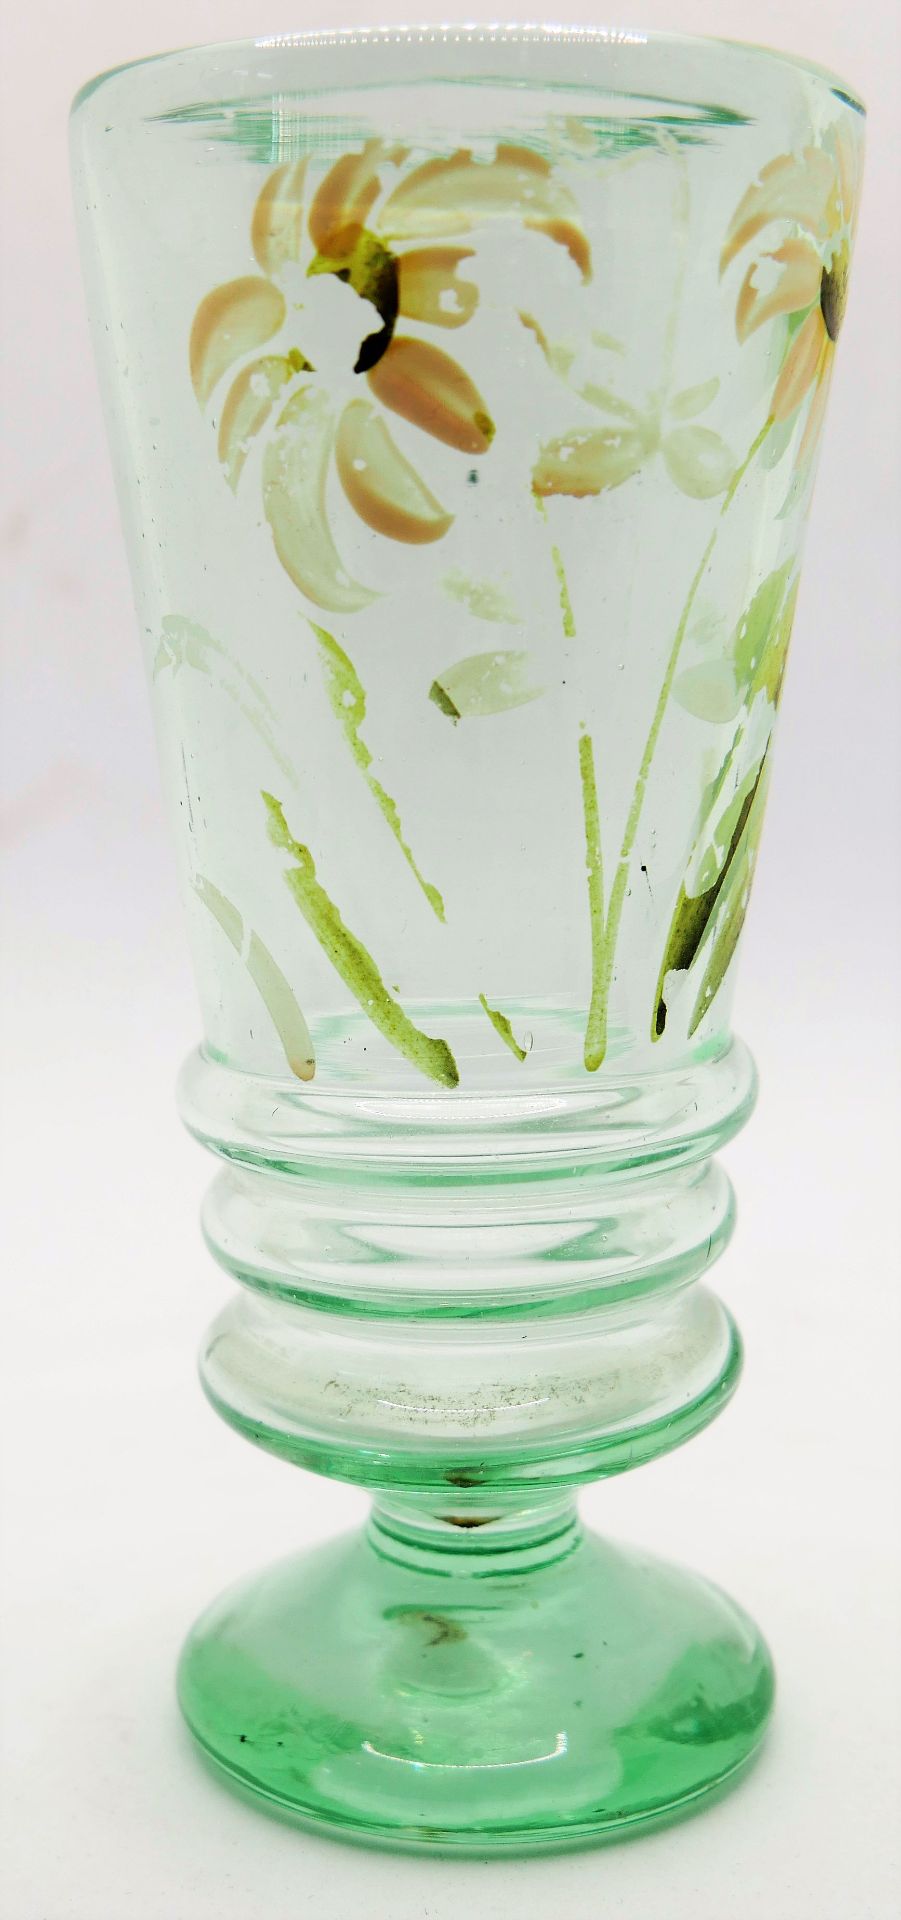 kleines Biedermair Pokalglas, hellgrün, mit Emaille Malerei, Höhe ca 14cm, mit Gebrauchsspuren>/de>